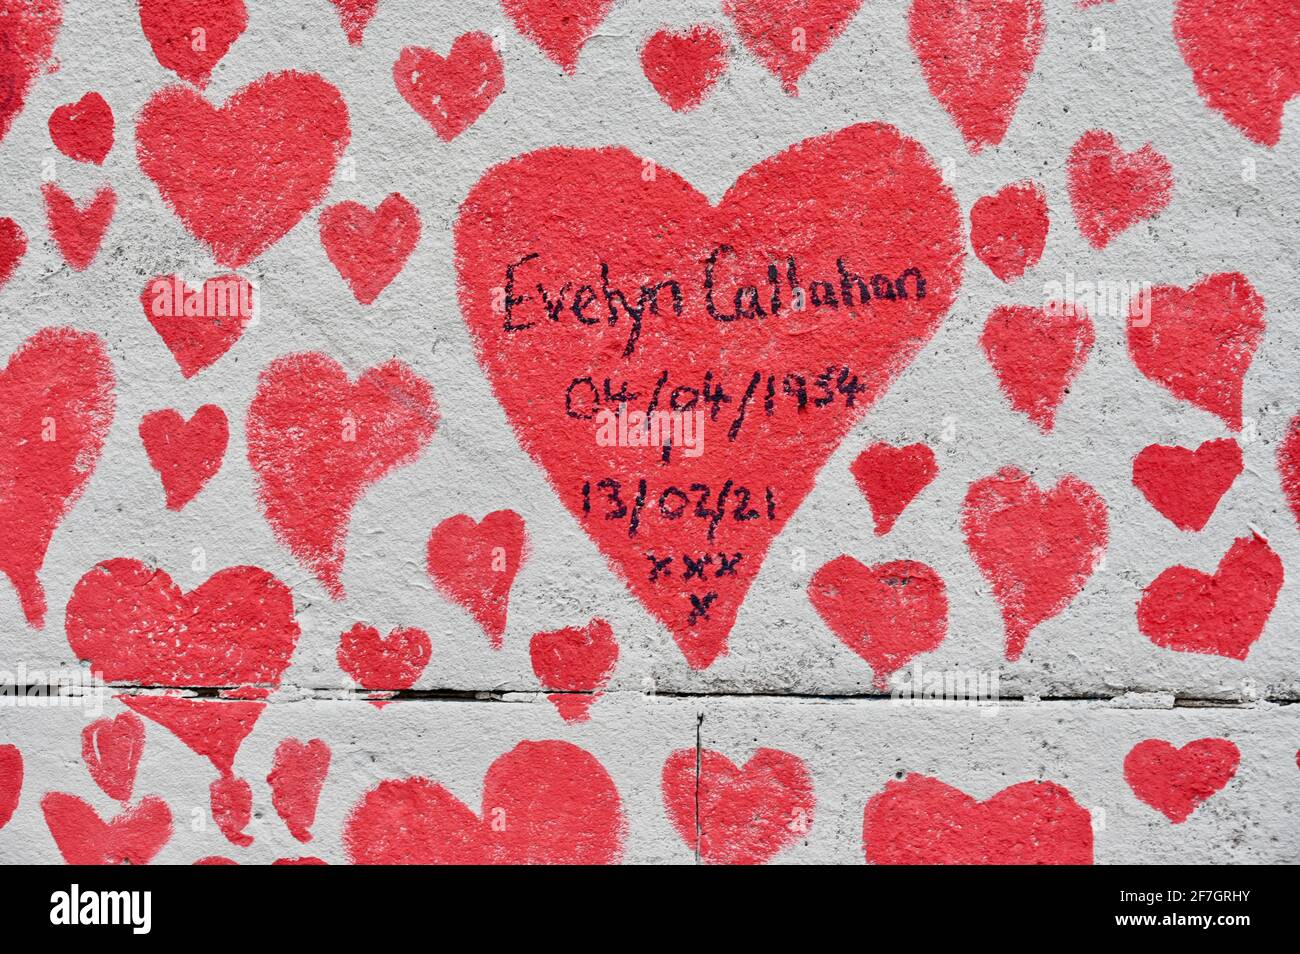 National Covid Memorial Wall, rund 130,000 Herzen wurden auf einem Kilometer langen Mauerabschnitt gegenüber dem Parlamentsgebäude als Denkmal für diejenigen, die an dem Coronavirus gestorben sind, gemalt. St. Thomas' Hospital, Westminster, London. VEREINIGTES KÖNIGREICH Stockfoto